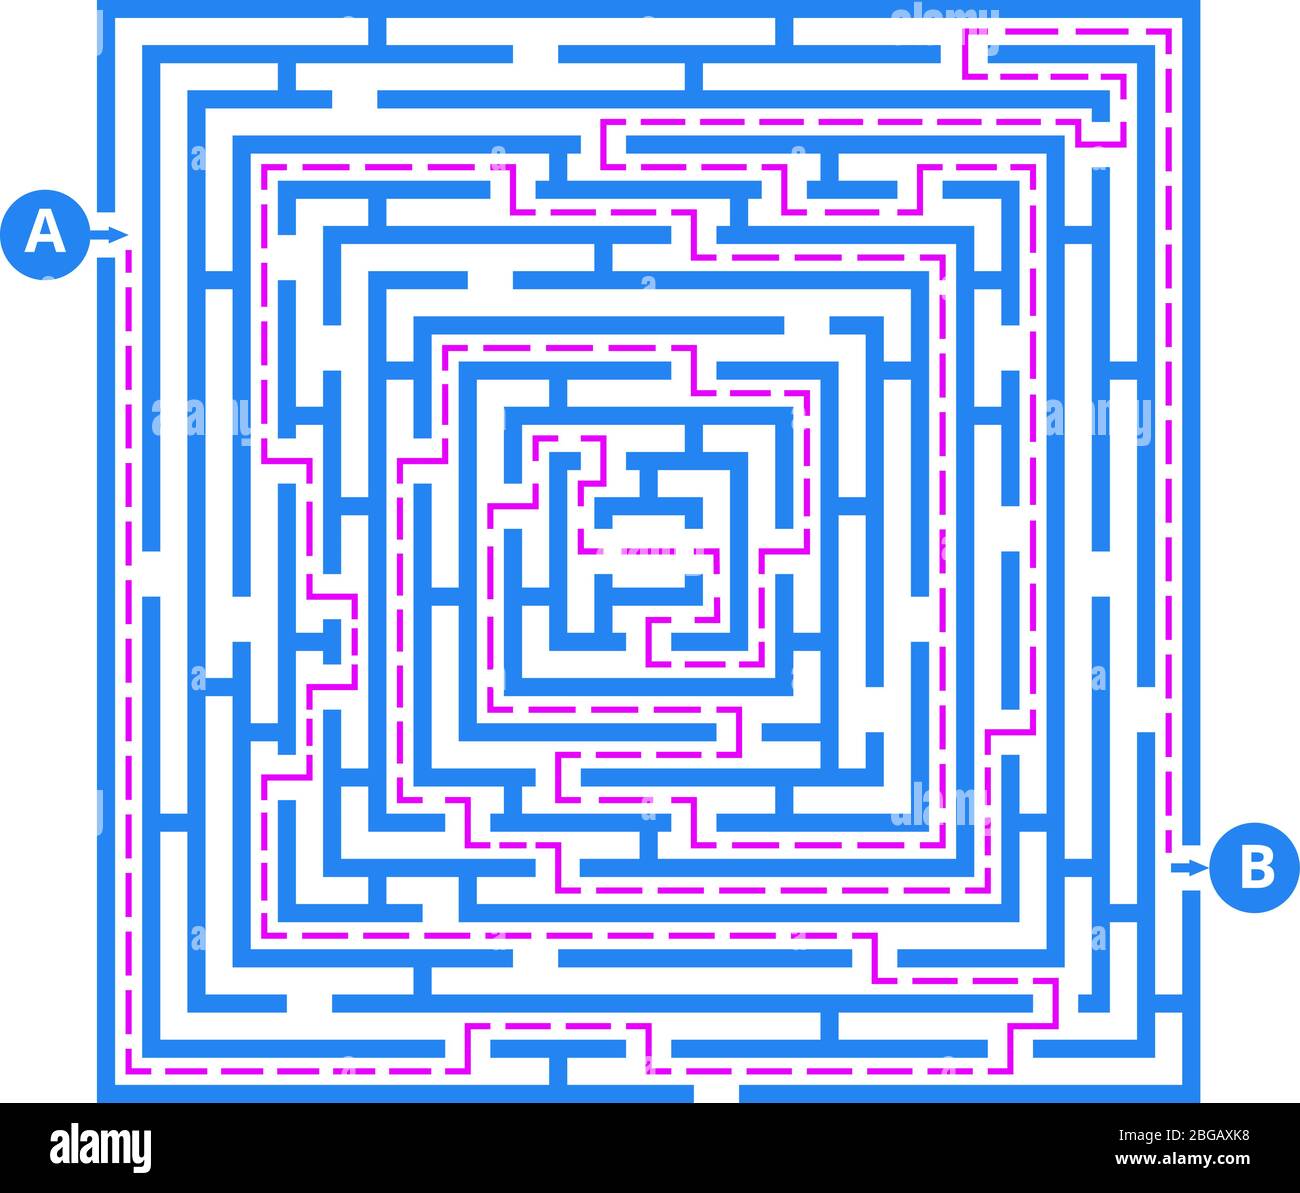 Labyrinthe de jeu de cerveau. Dédale vectorielle avec entrée, sortie et bonne voie d'accès. Jeu de puzzle de labyrinthe, direction pour terminer l'illustration Illustration de Vecteur